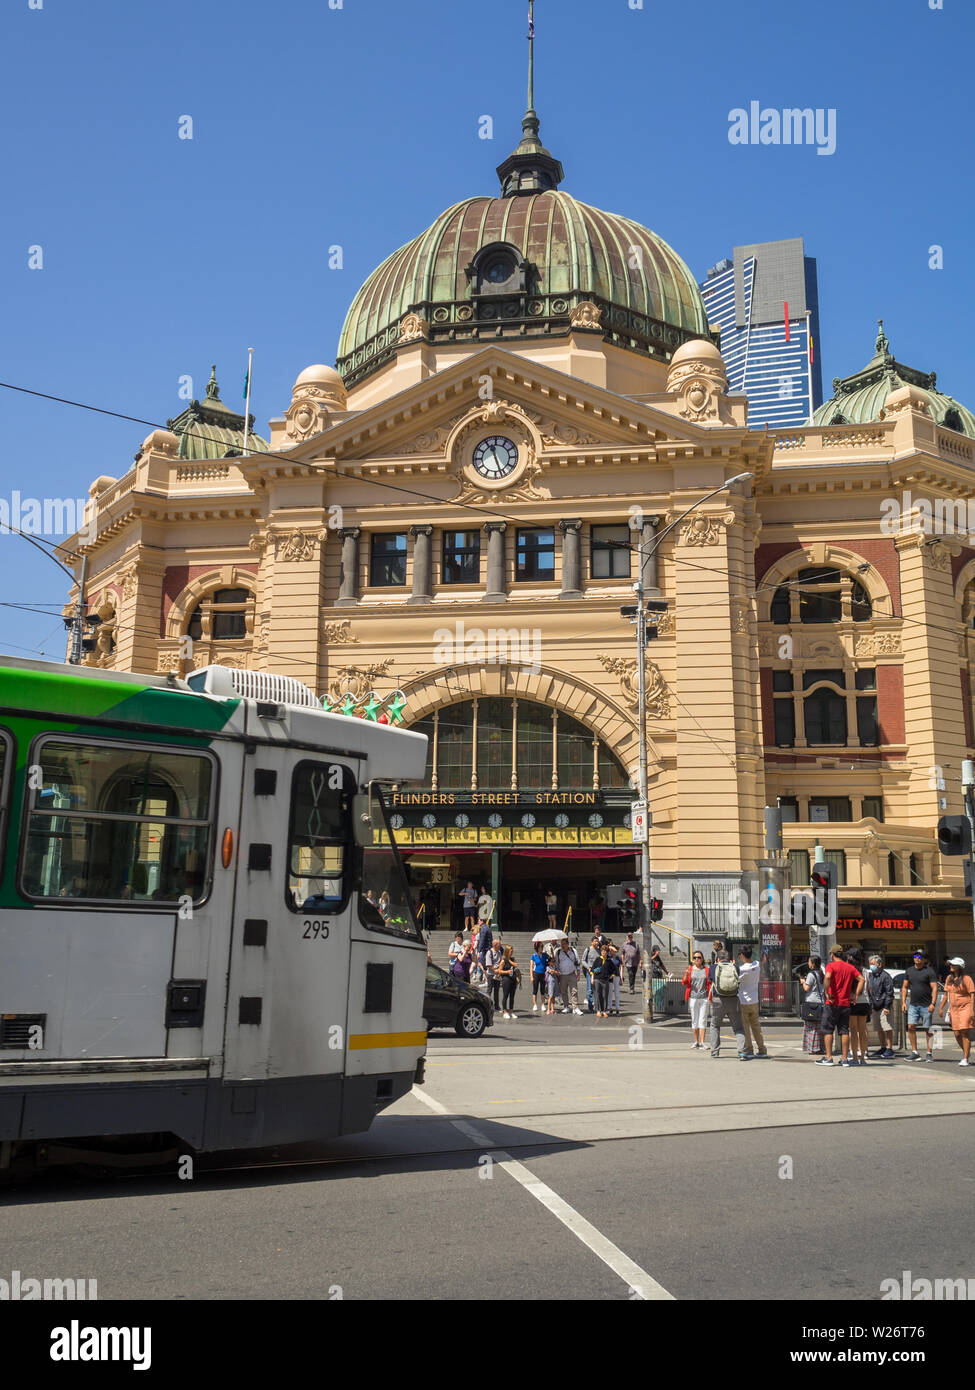 Tranvía cruzando la calle de la estación de Flinders Street en Melbourne. Foto de stock